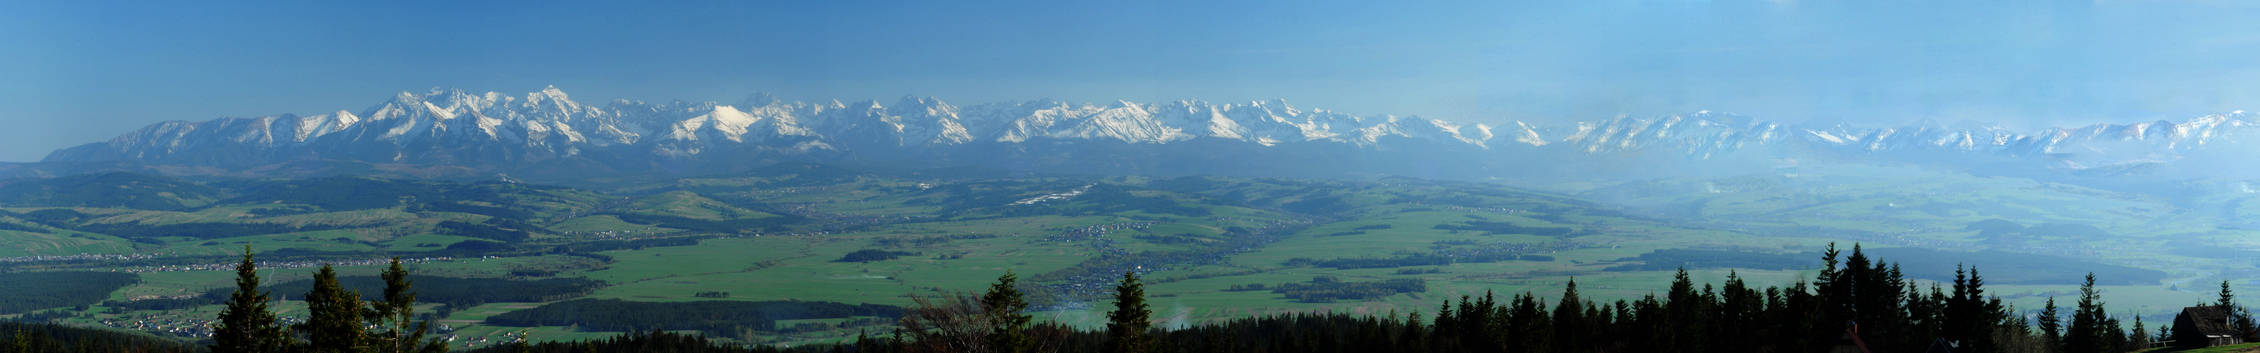 Tatry mountains panorama